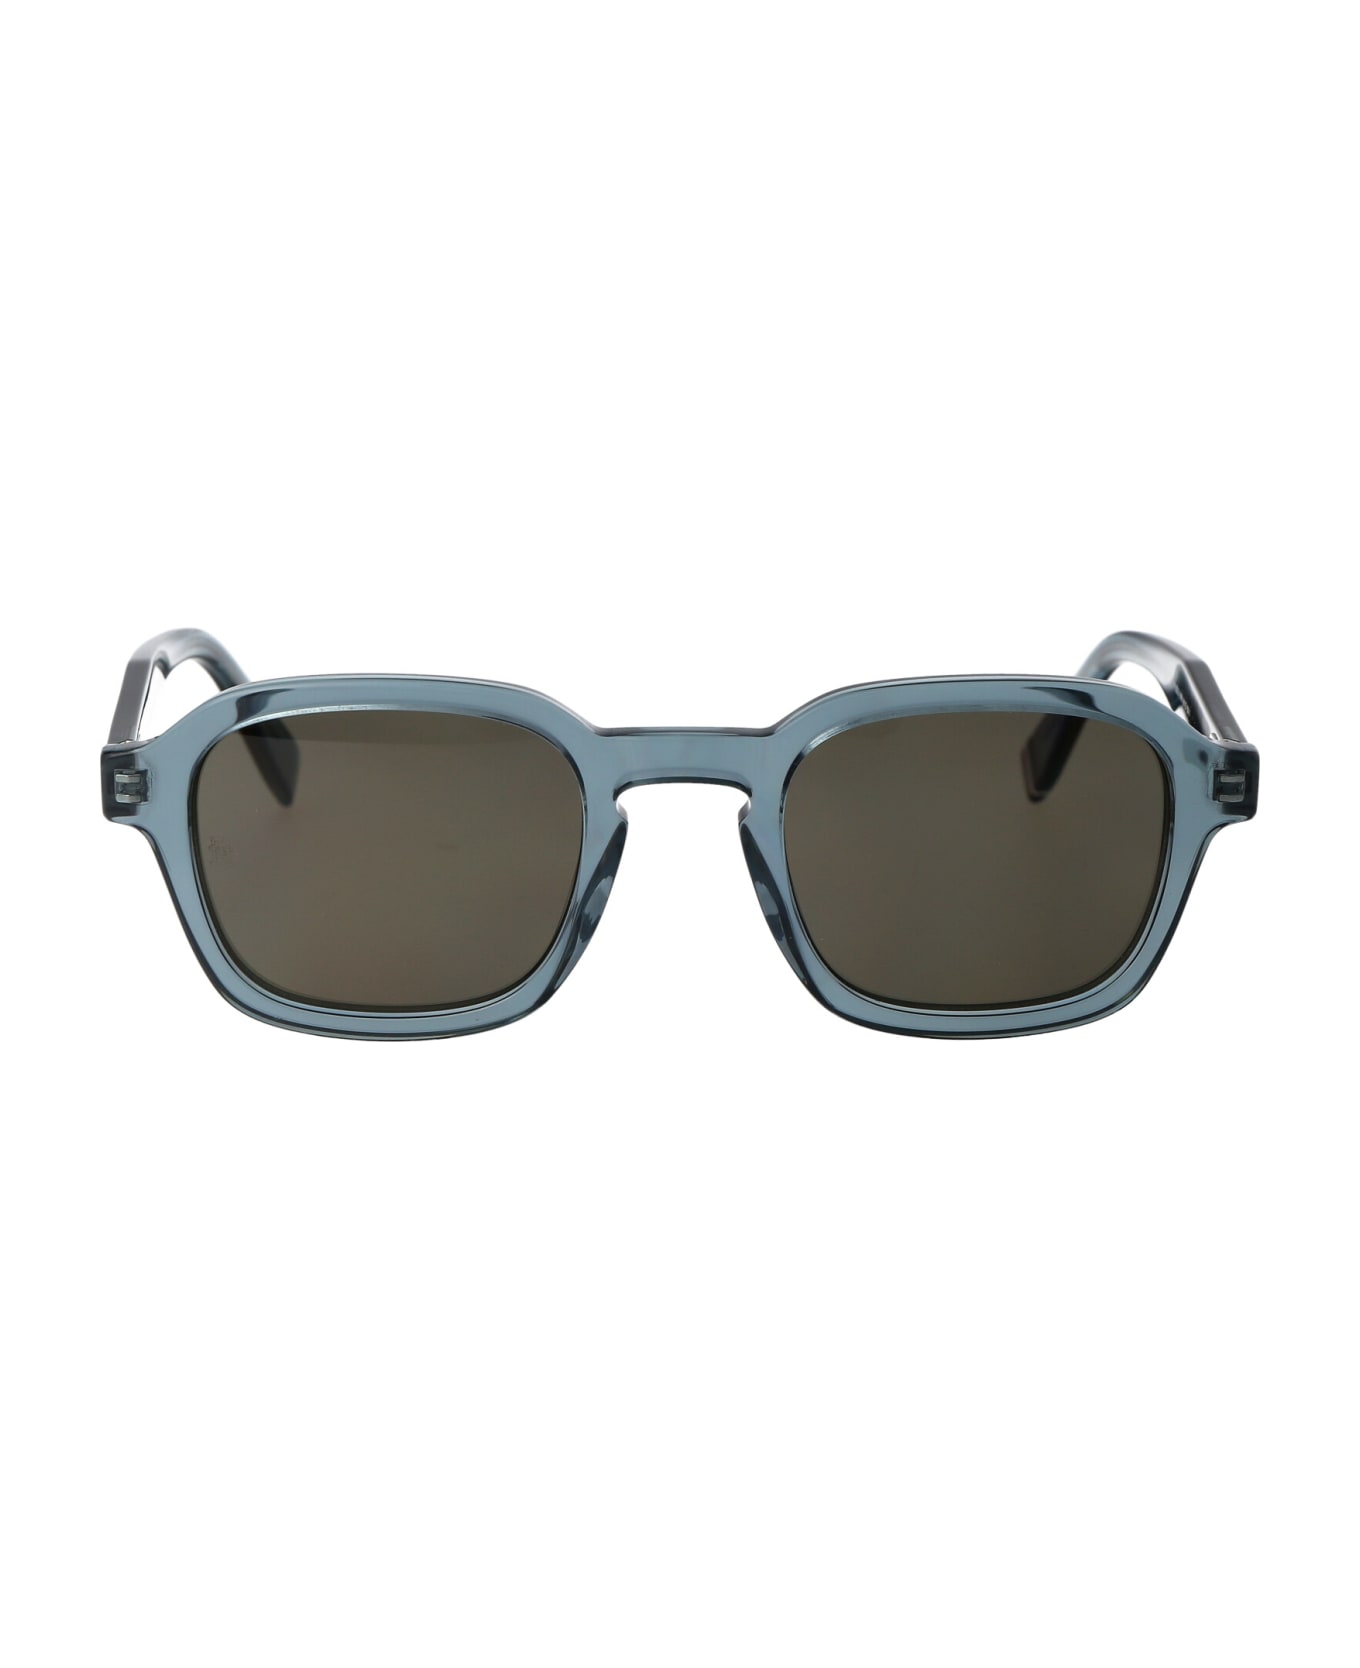 Tommy Hilfiger Th 2032/s Sunglasses - PJPIR BLUE